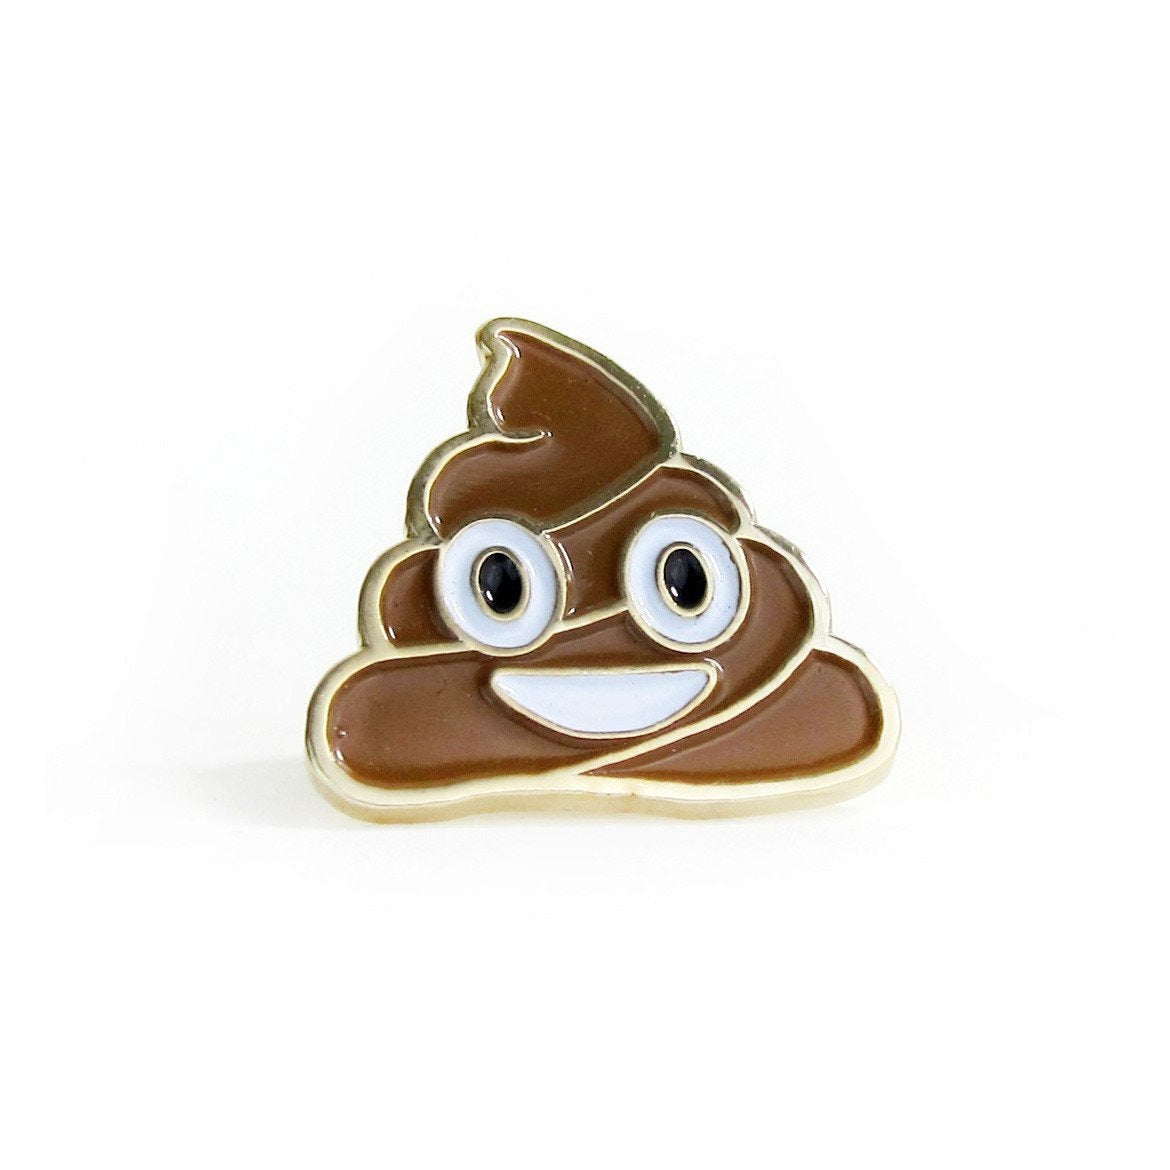 No Fun Press - "Happy Poop" emoji enamel lapel pin